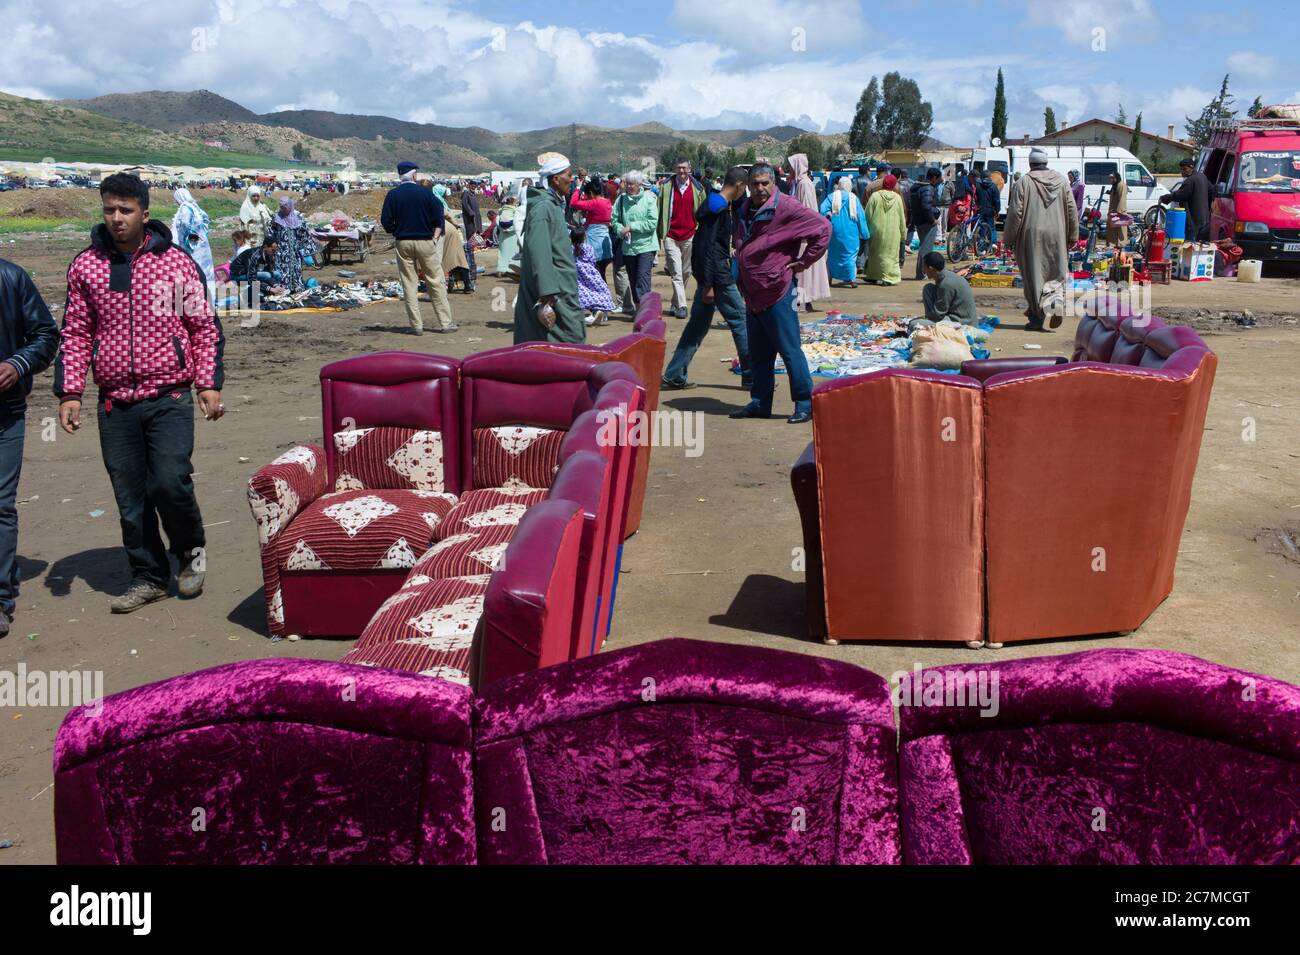 Le peuple marocain dans un marché (souk) dans un village près de Fès au Maroc. Canapés au premier plan Banque D'Images